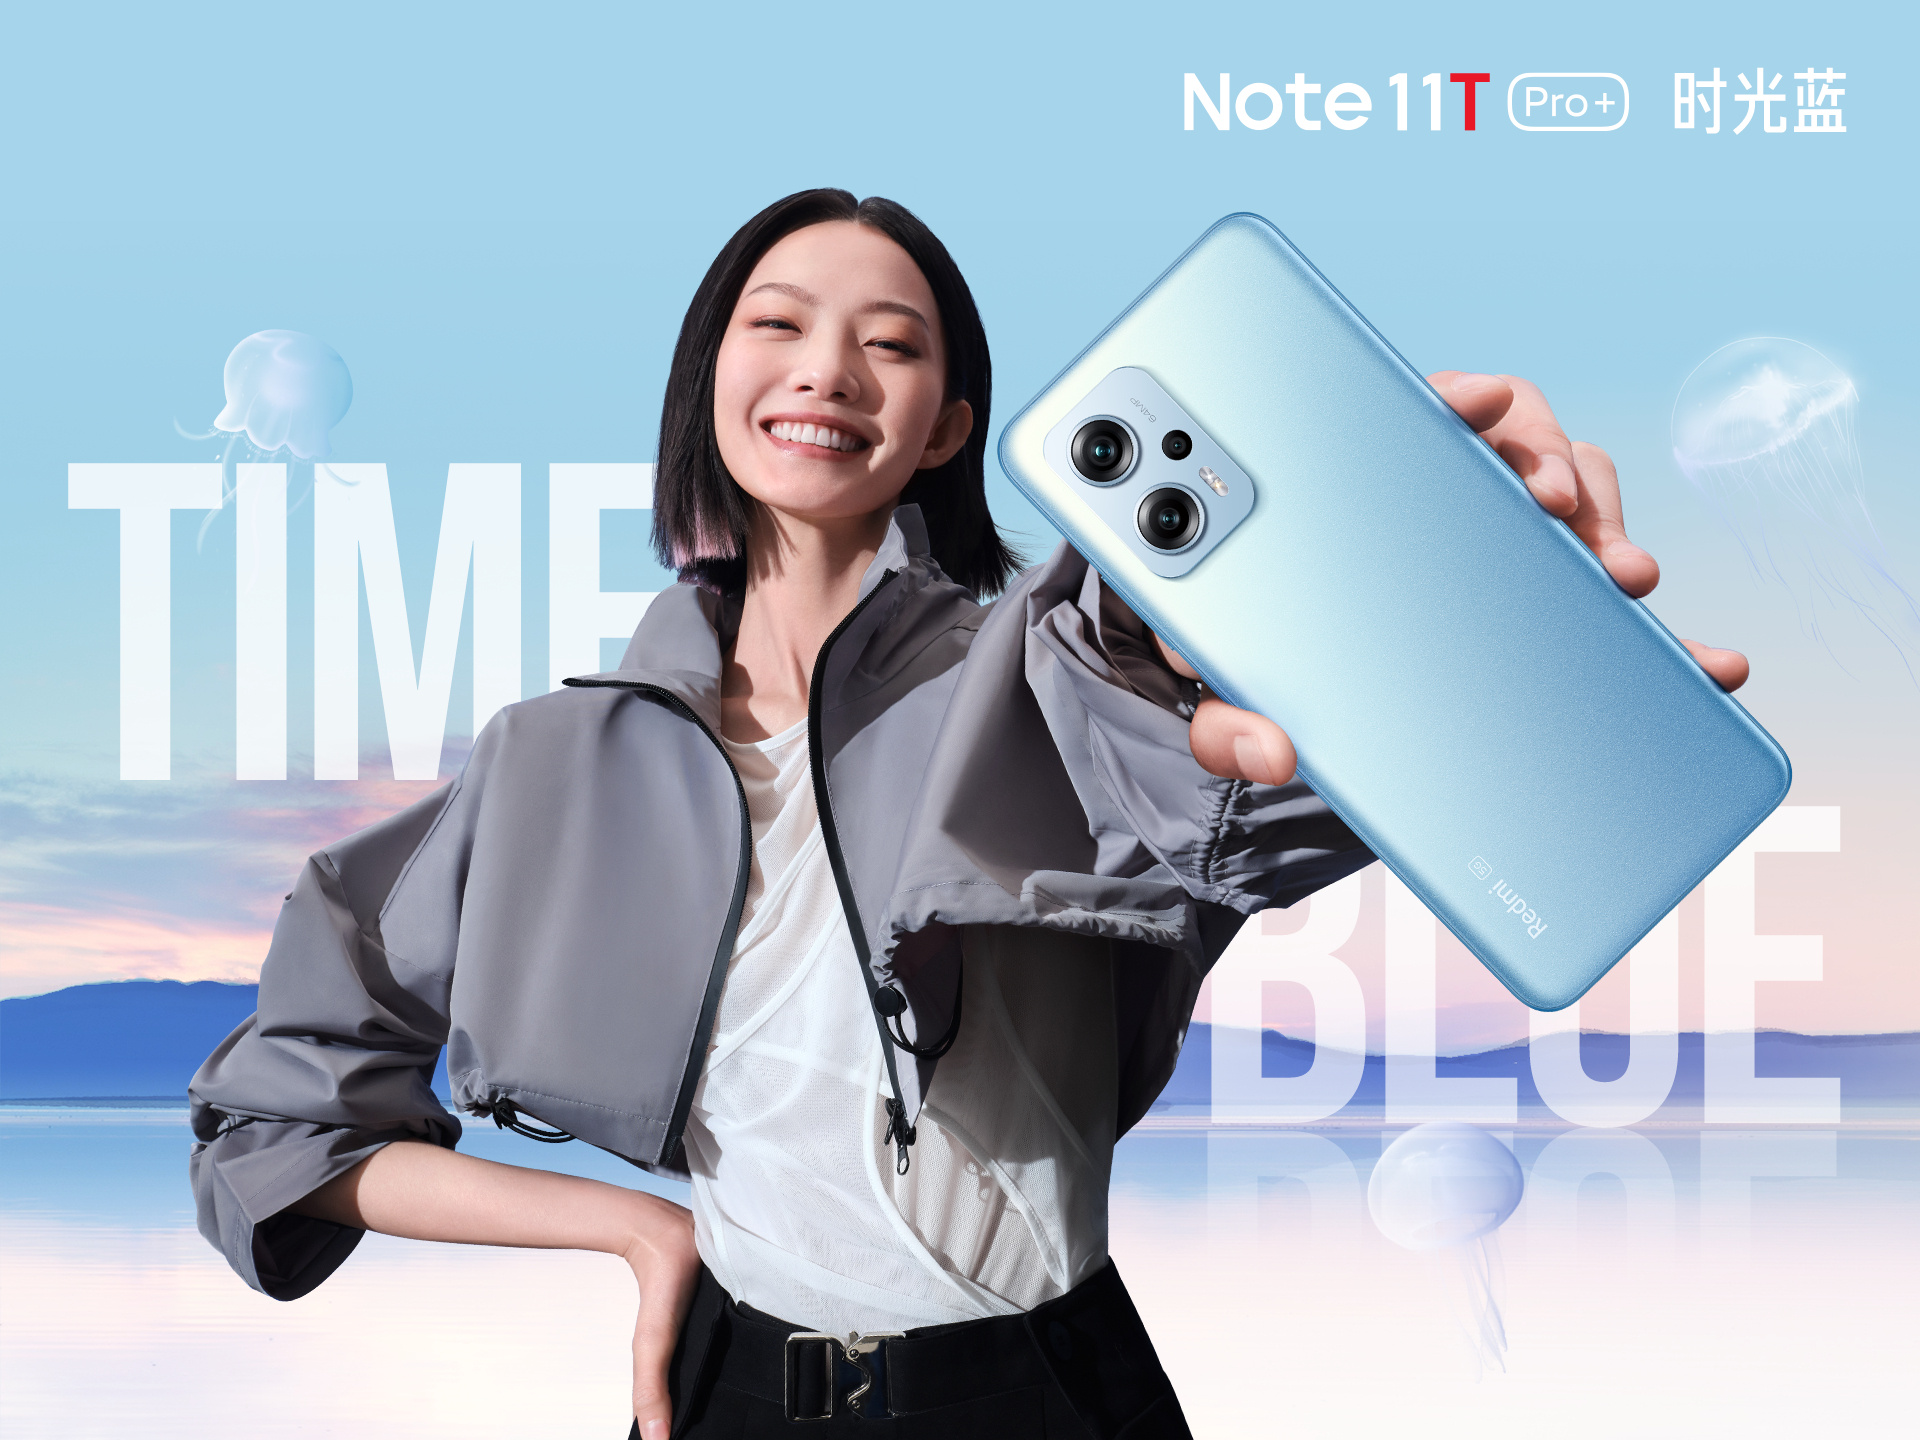 Redmi Note 11T Pro e Redmi Note 11T Pro+ entreranno nel mercato globale con il marchio POCO